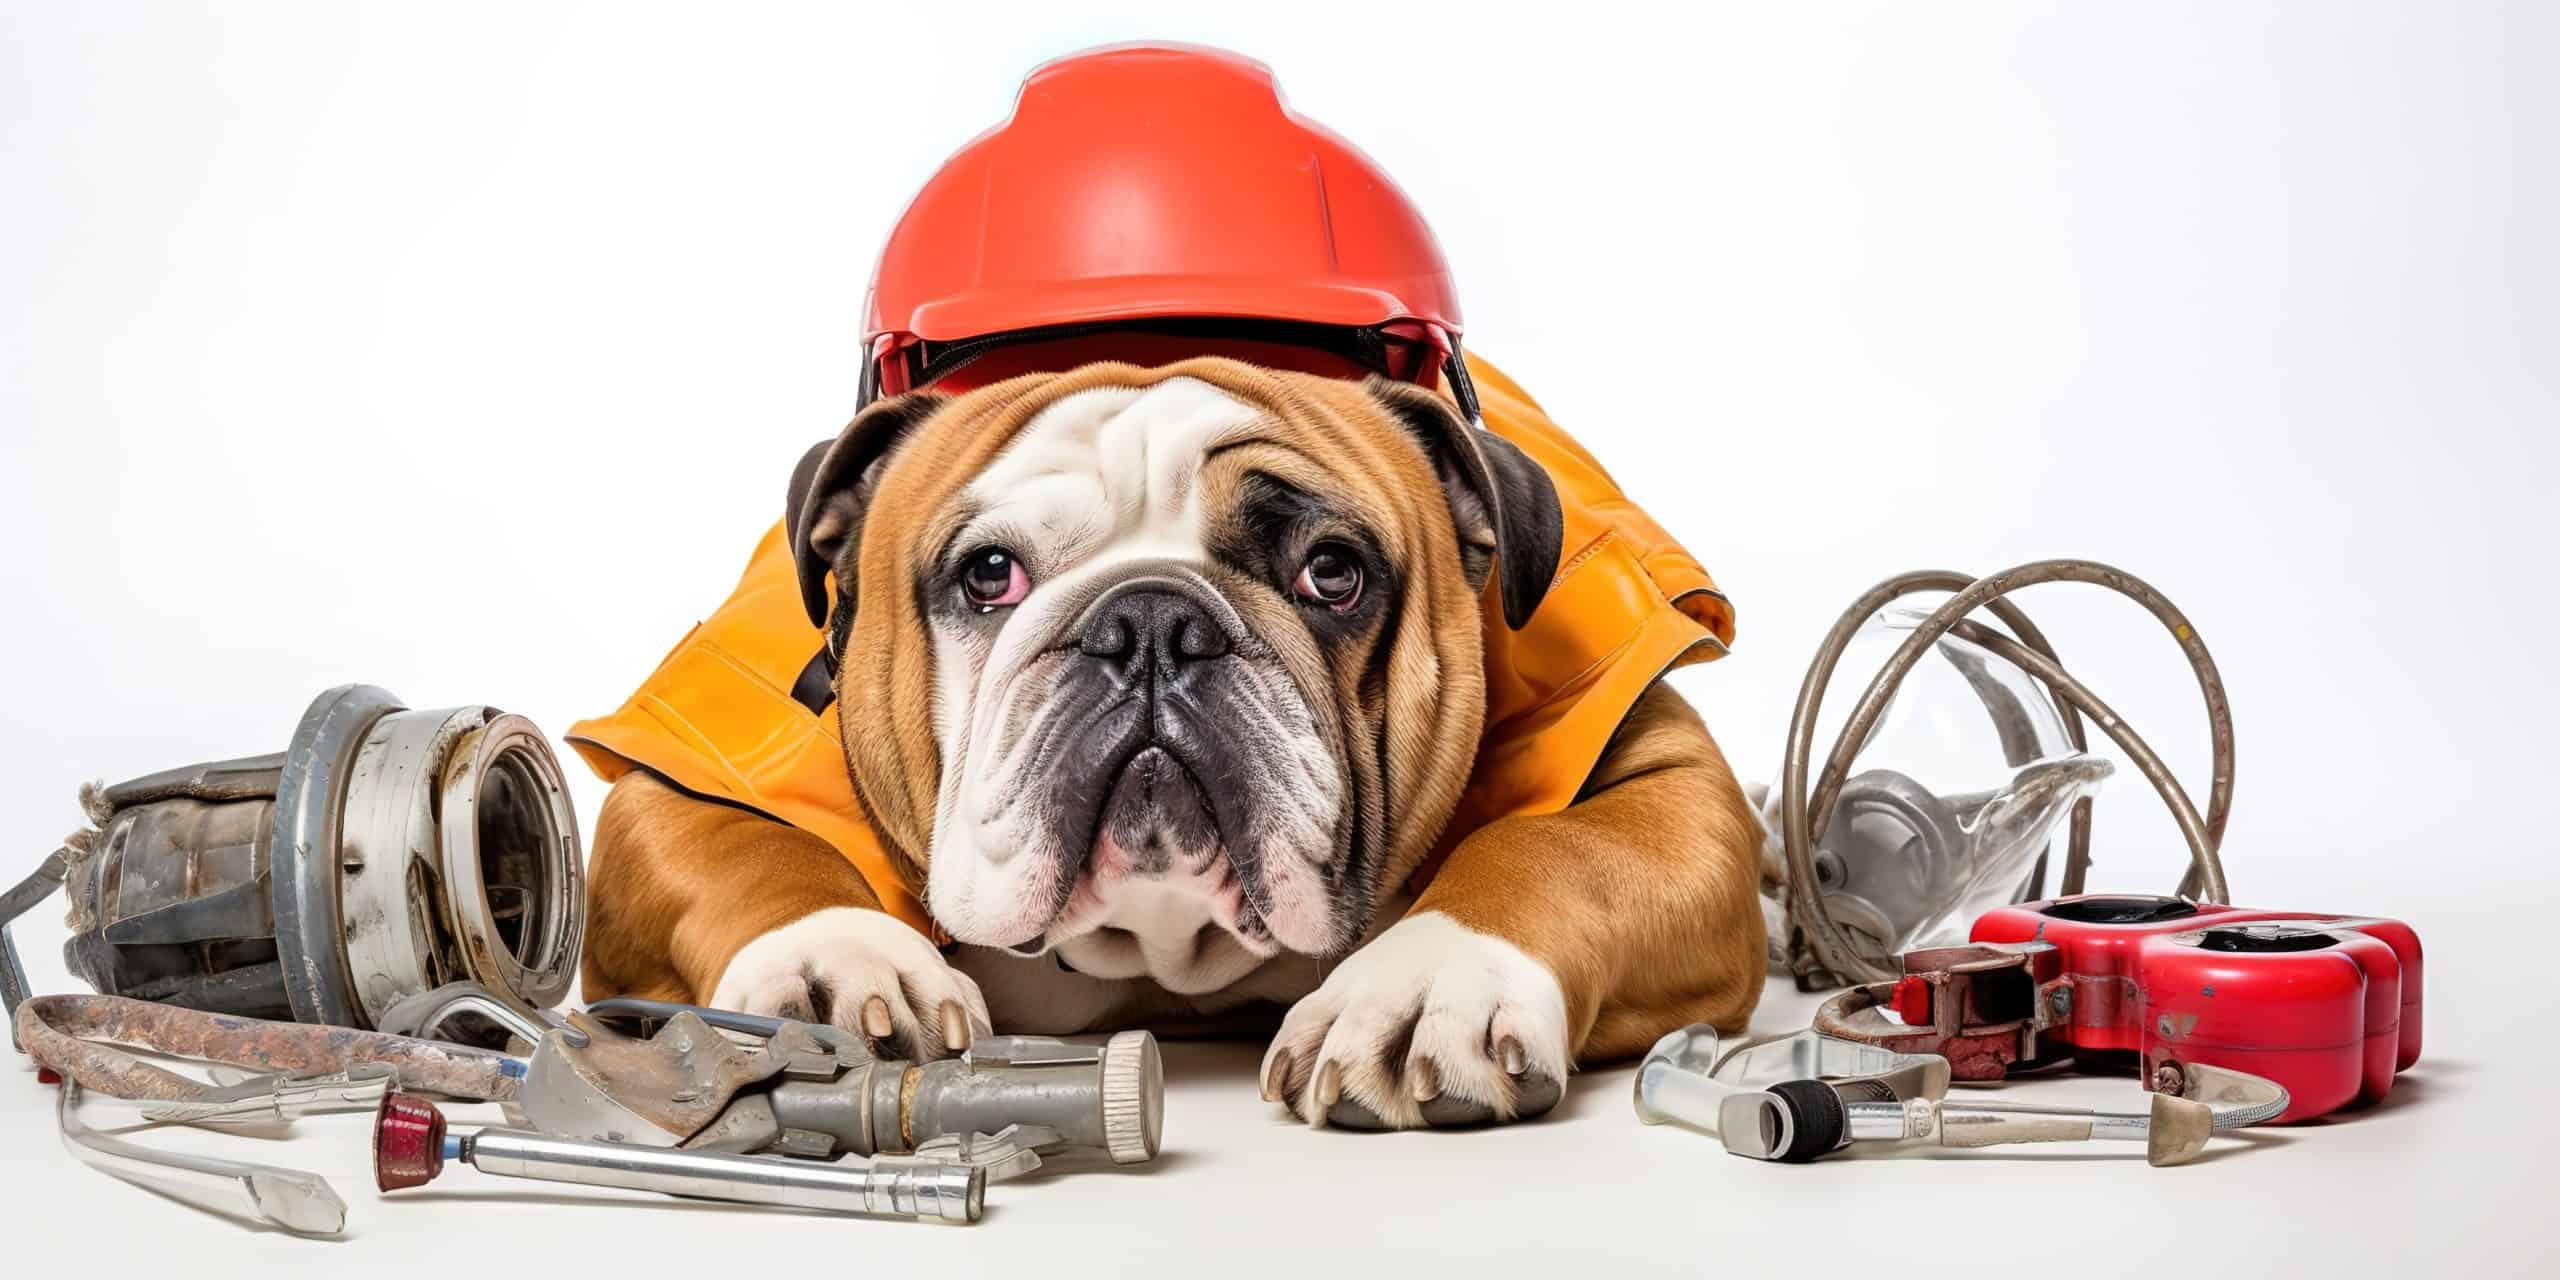 Bulldogge mit Helm, Schutzweste und Bauteilen